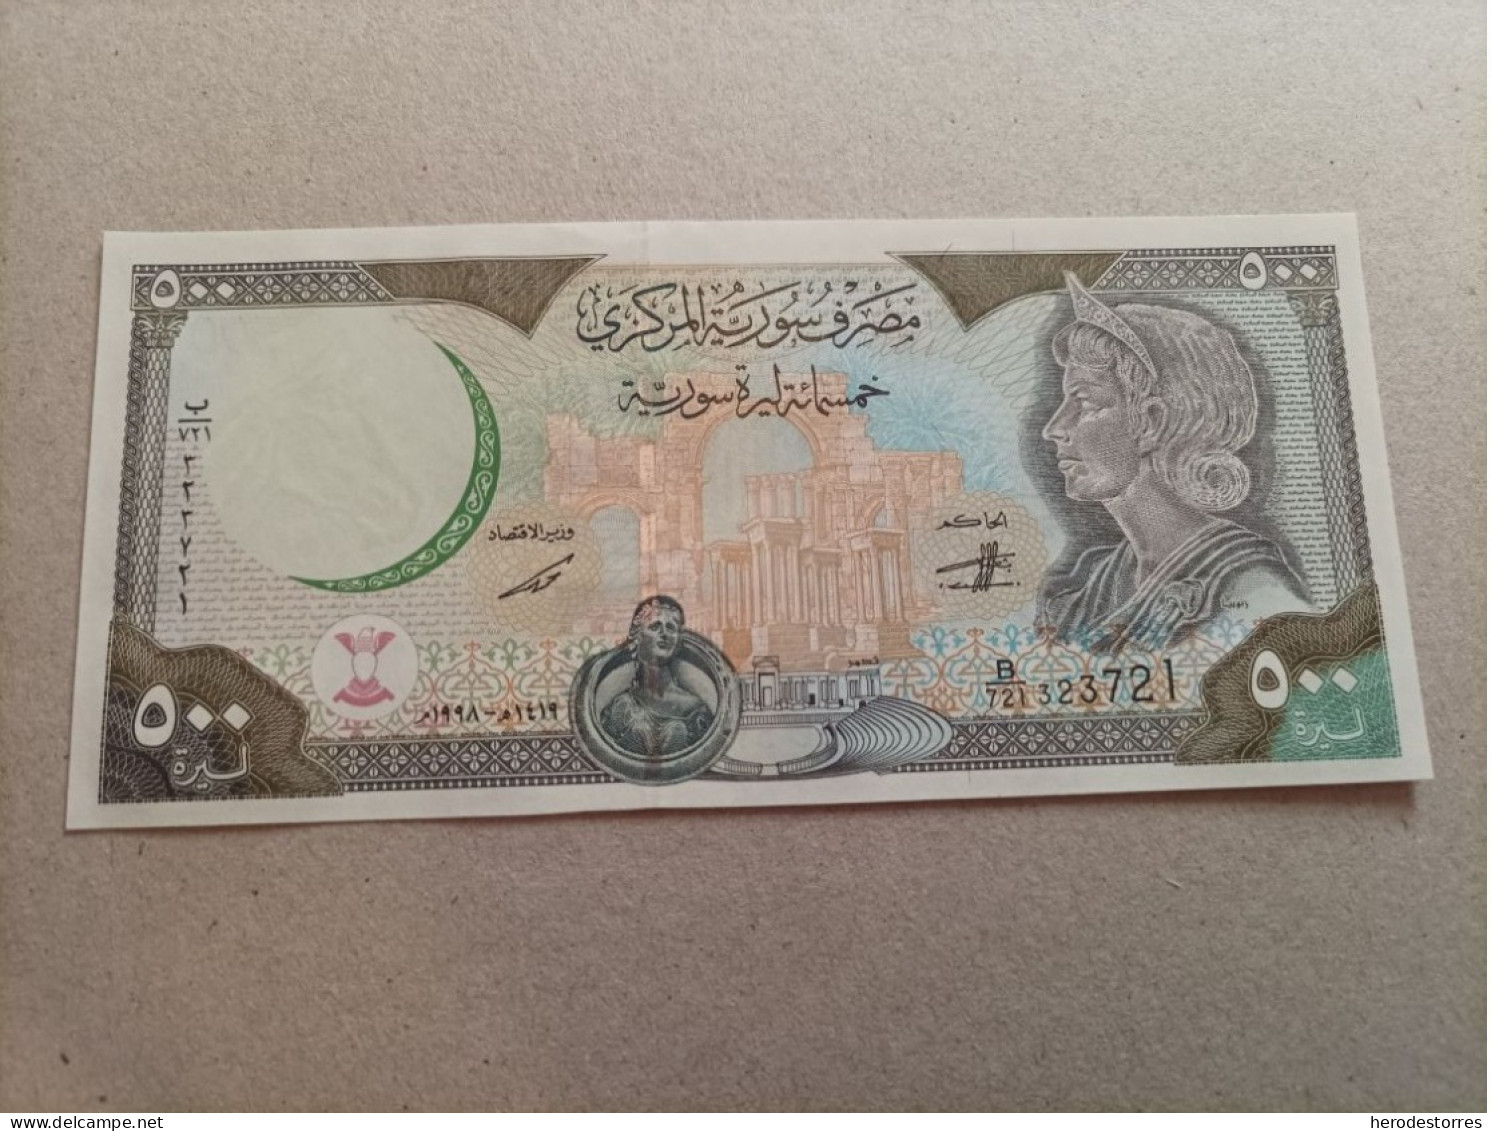 Billete De Siria De 500 Syrian Pounds, Año 1998, Sc/plancha - Siria